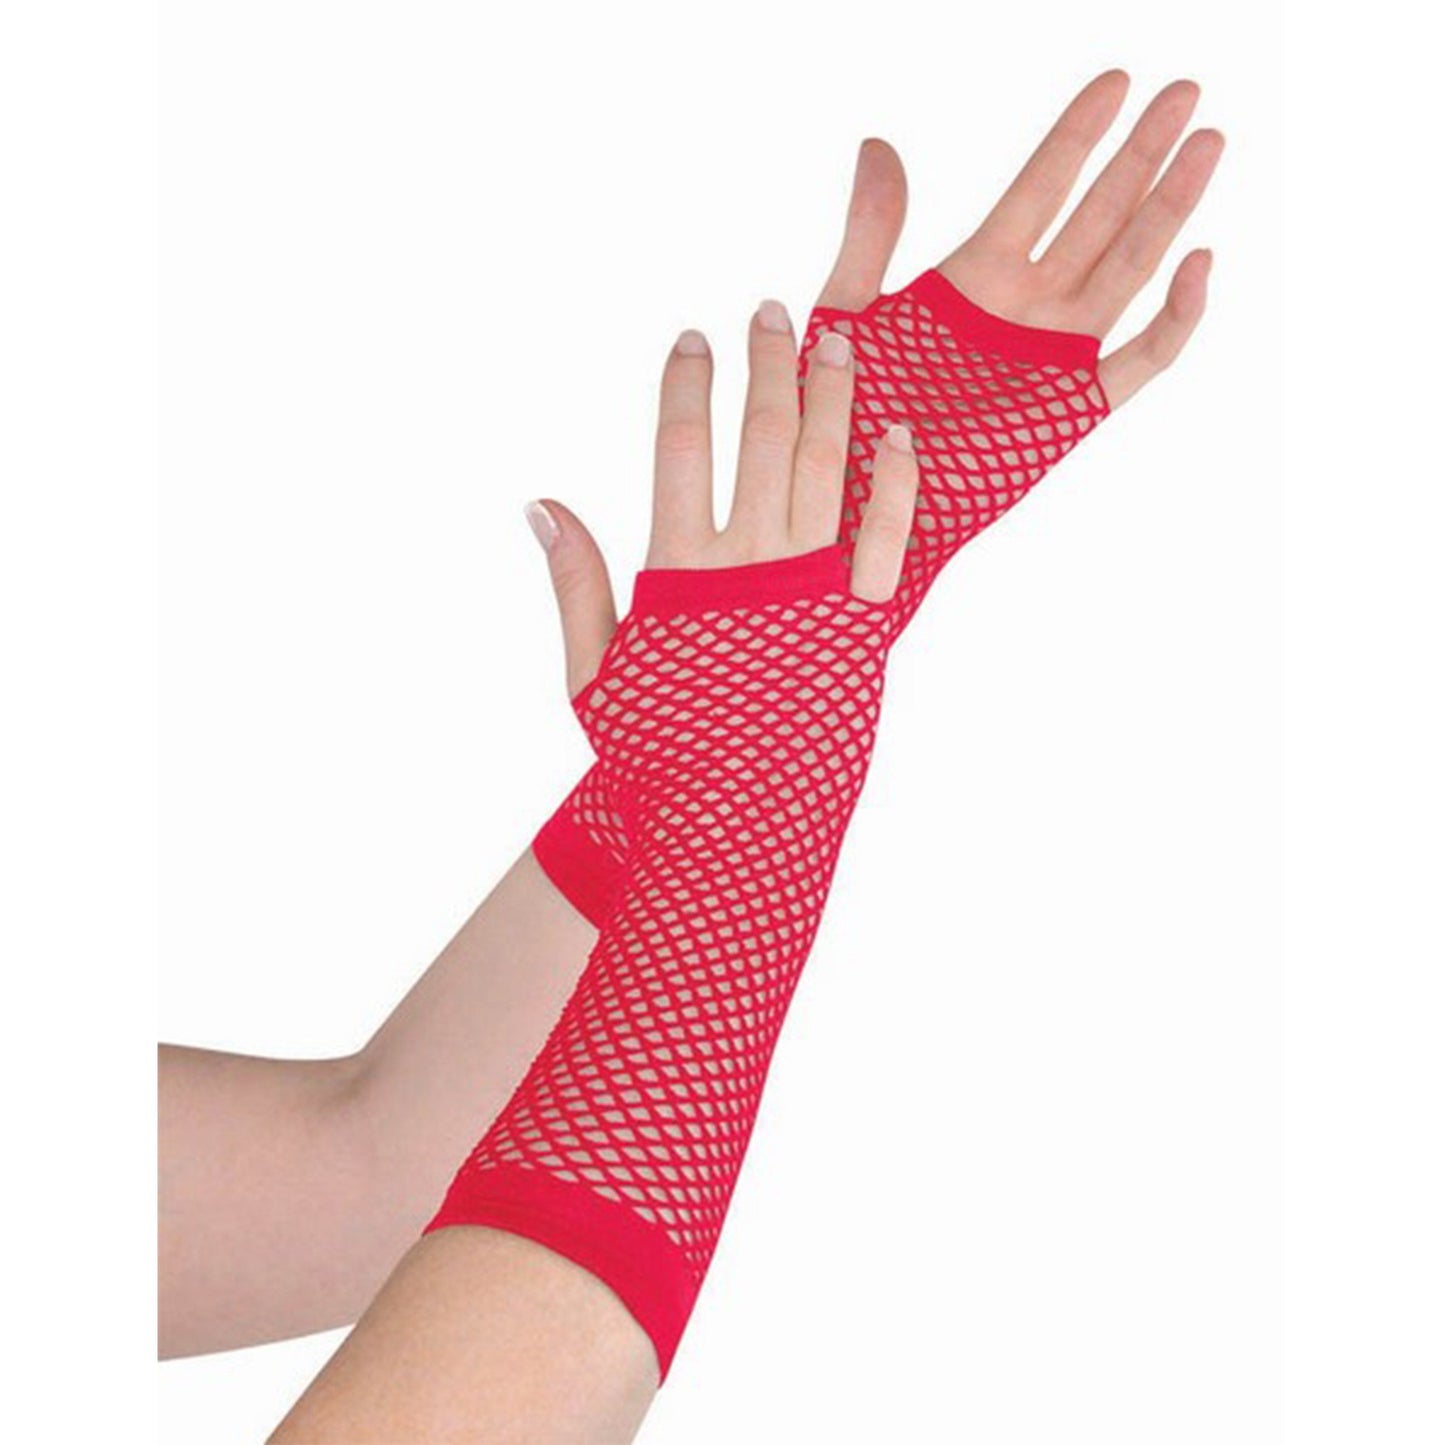 Fishnet Gloves Long - Red